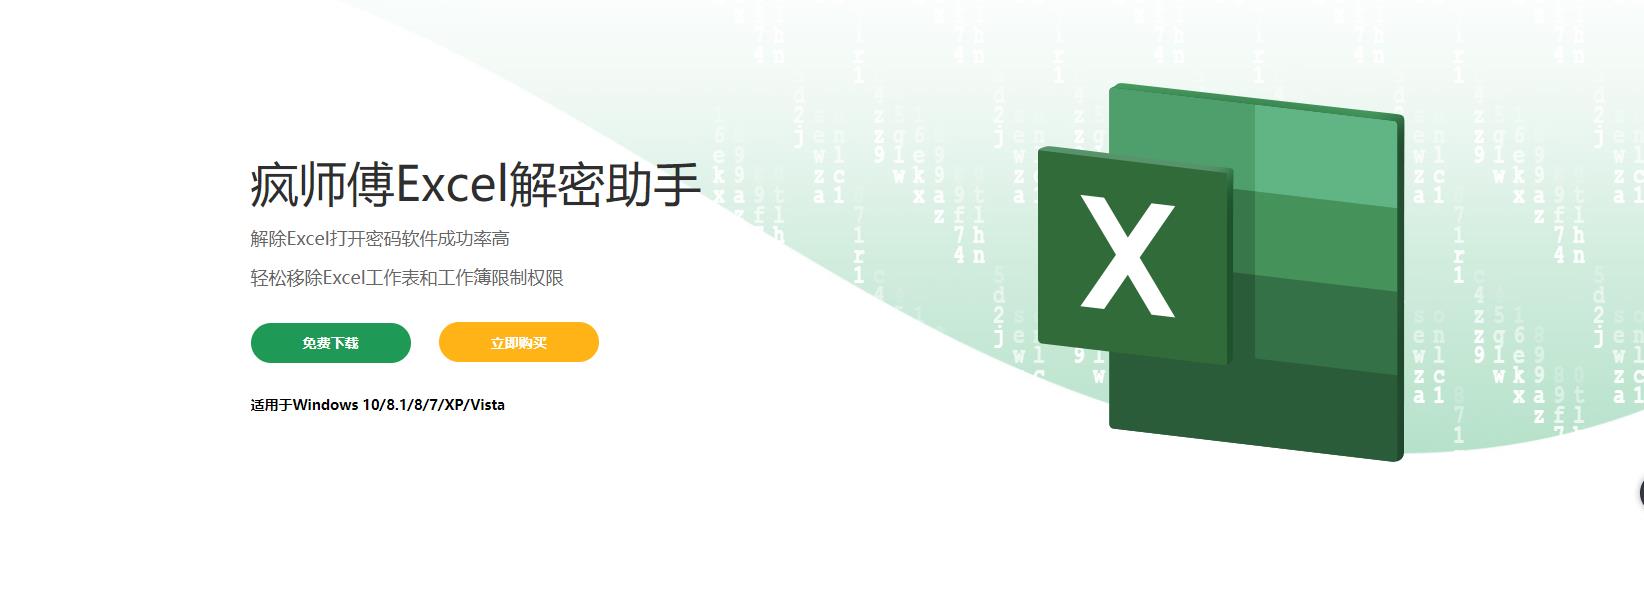 疯师傅Excel解密助手(Passper for Excel)